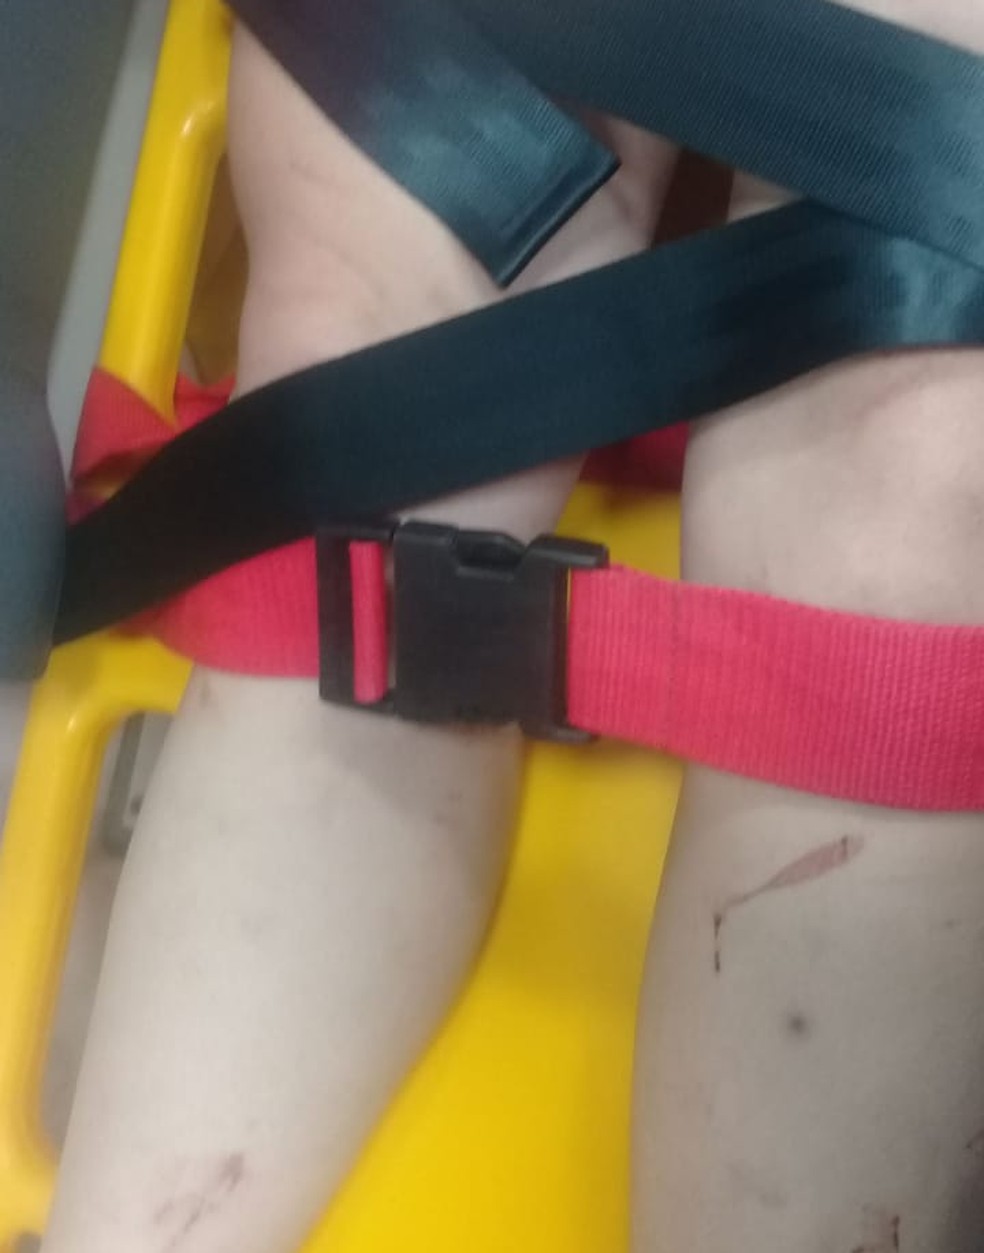 Mulher sofreu vários ferimentos pelo corpo em Duartina  — Foto: Polícia Civil / Divulgação 